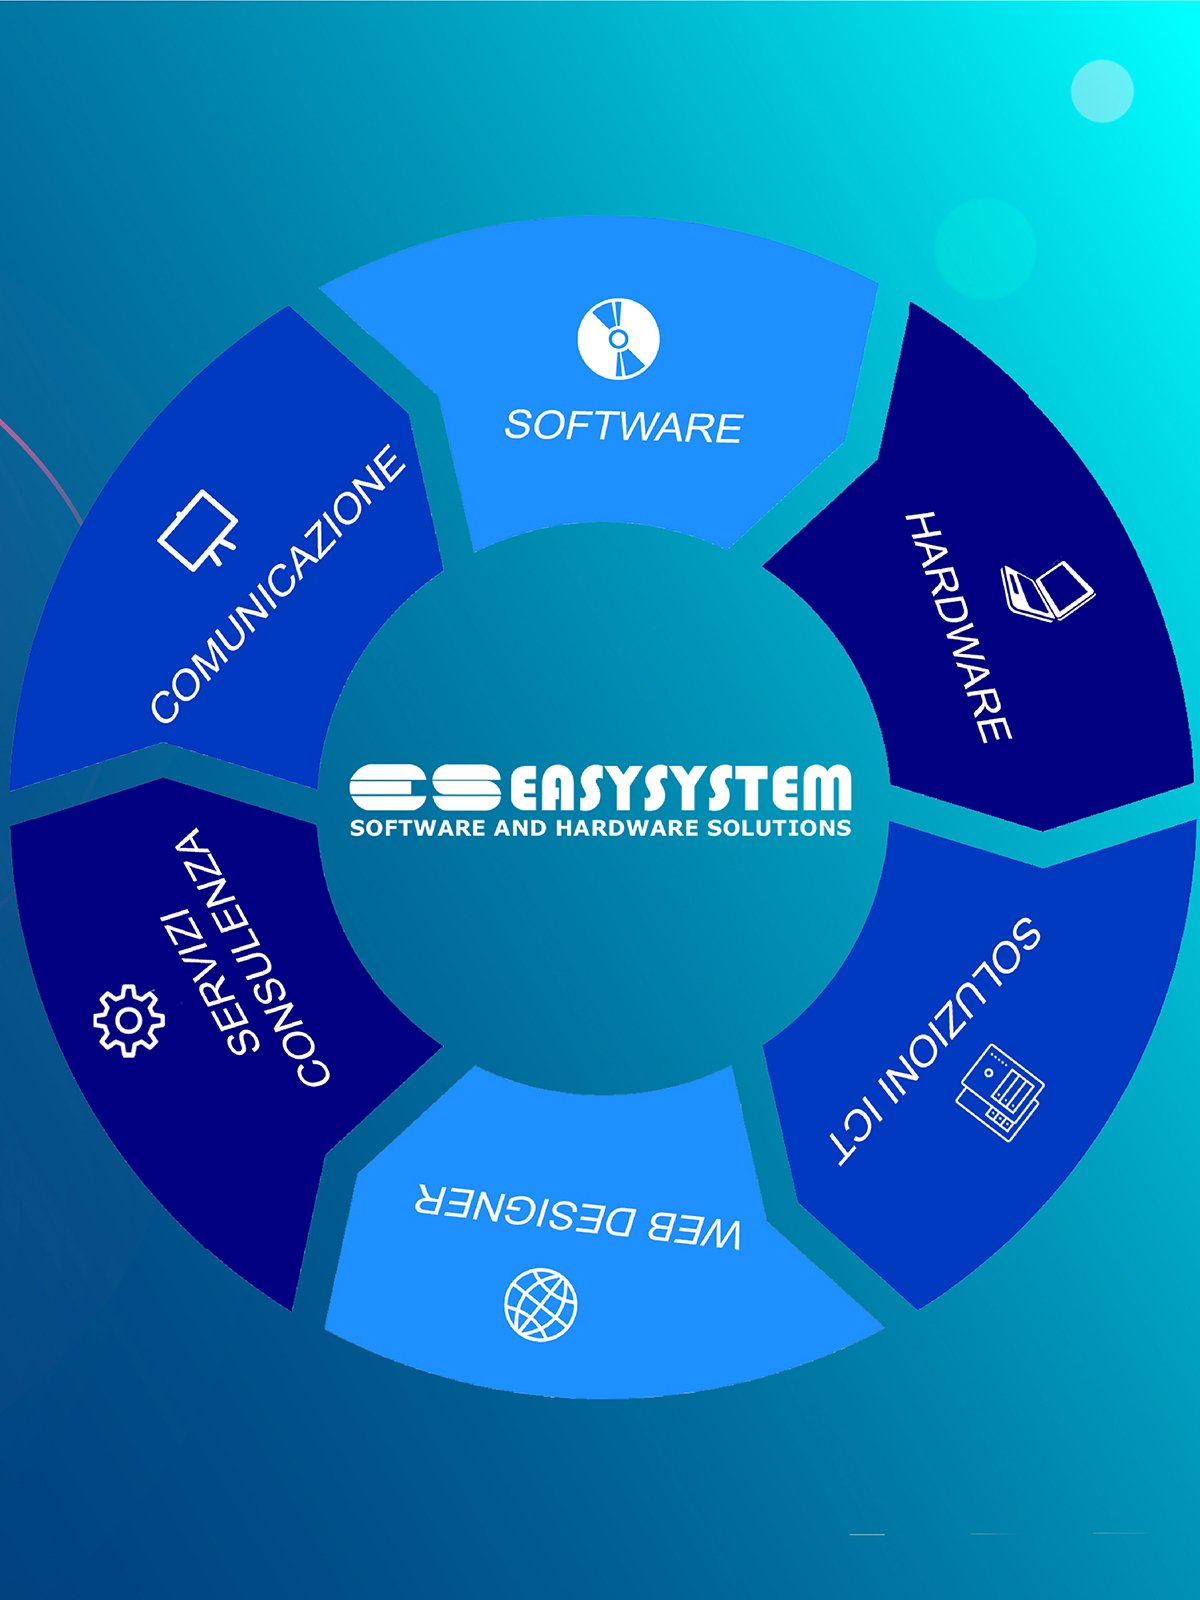   Easysystem: «Ecco il software che aiuta a fare più utili»